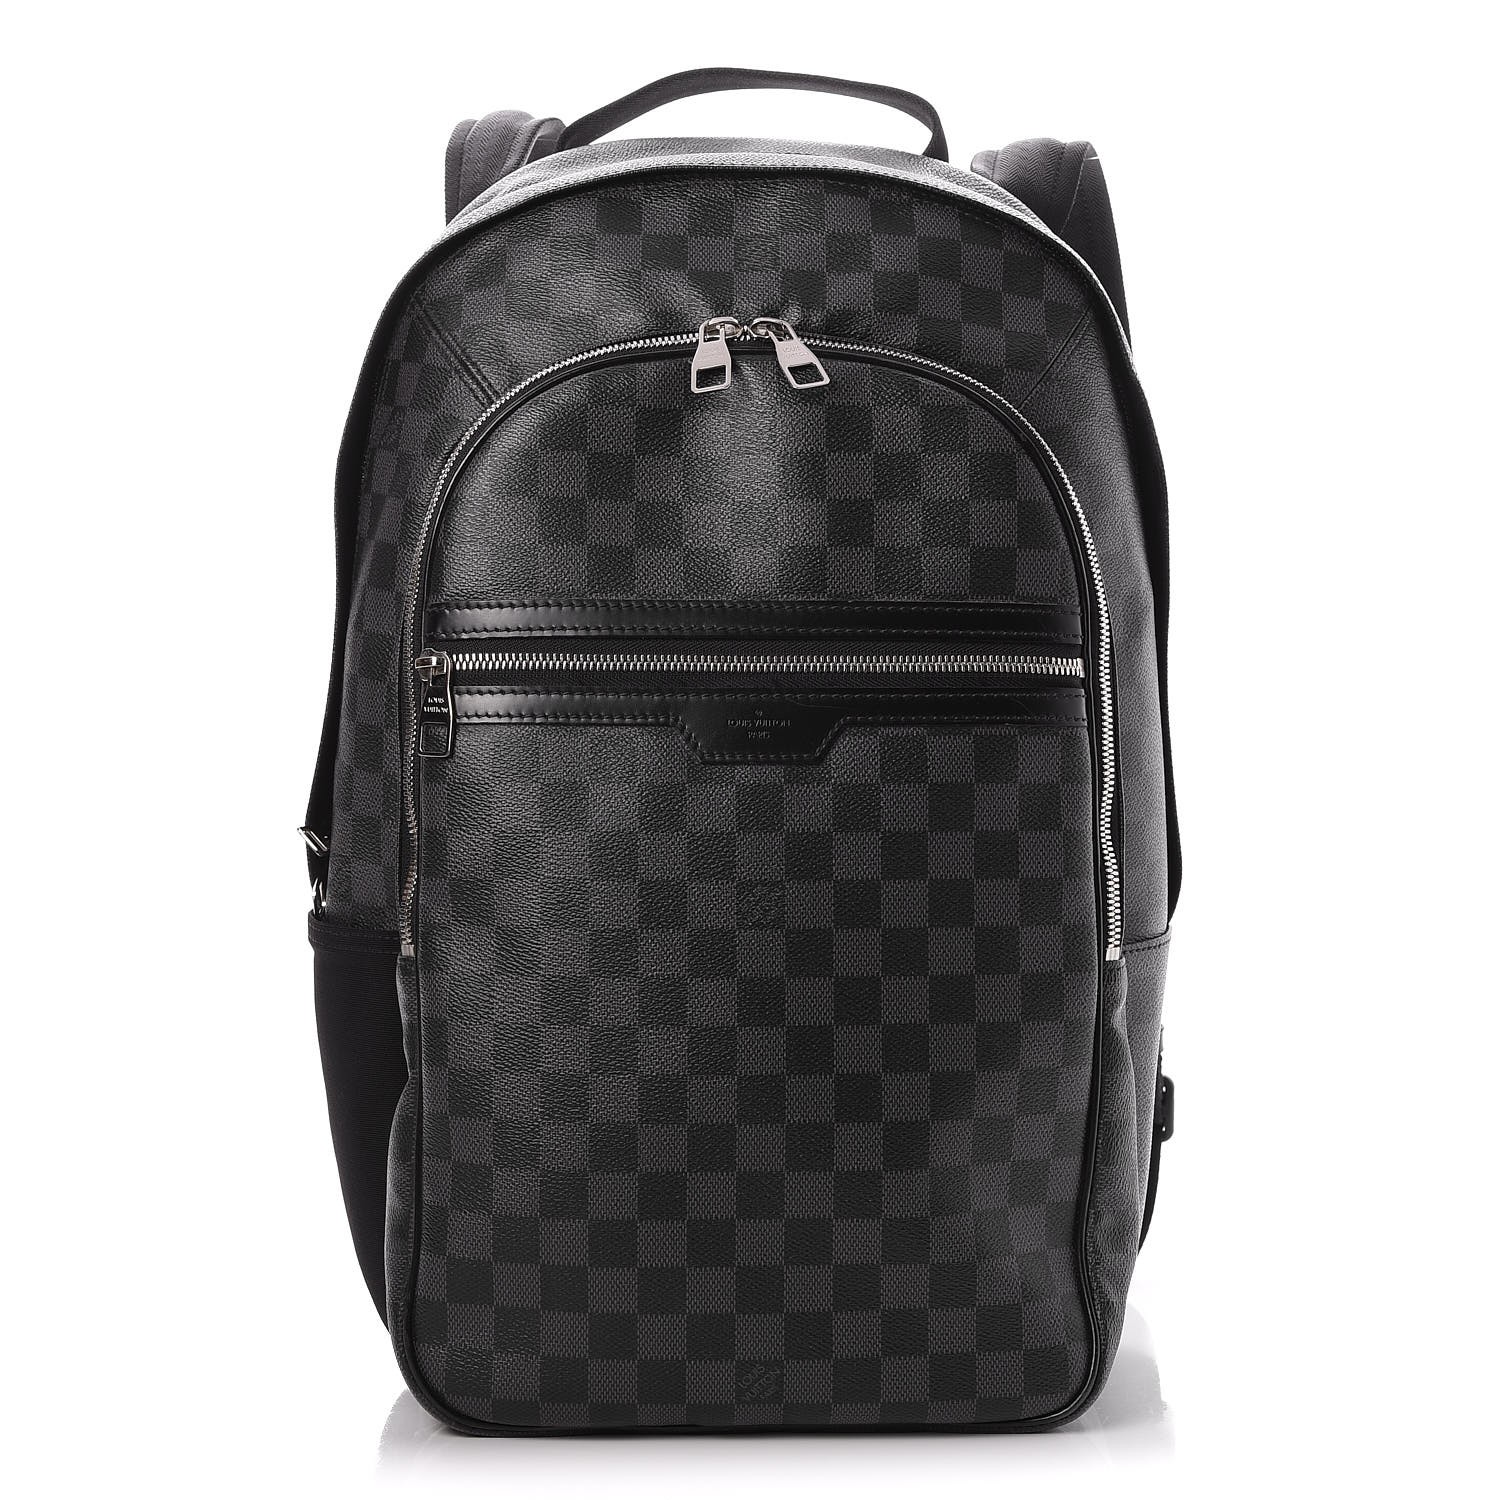 Louis Vuitton Damier Graphite Michael Backpack - For Sale on 1stDibs   louis vuitton michael backpack, louis vuitton backpack michael, michael lv  backpack